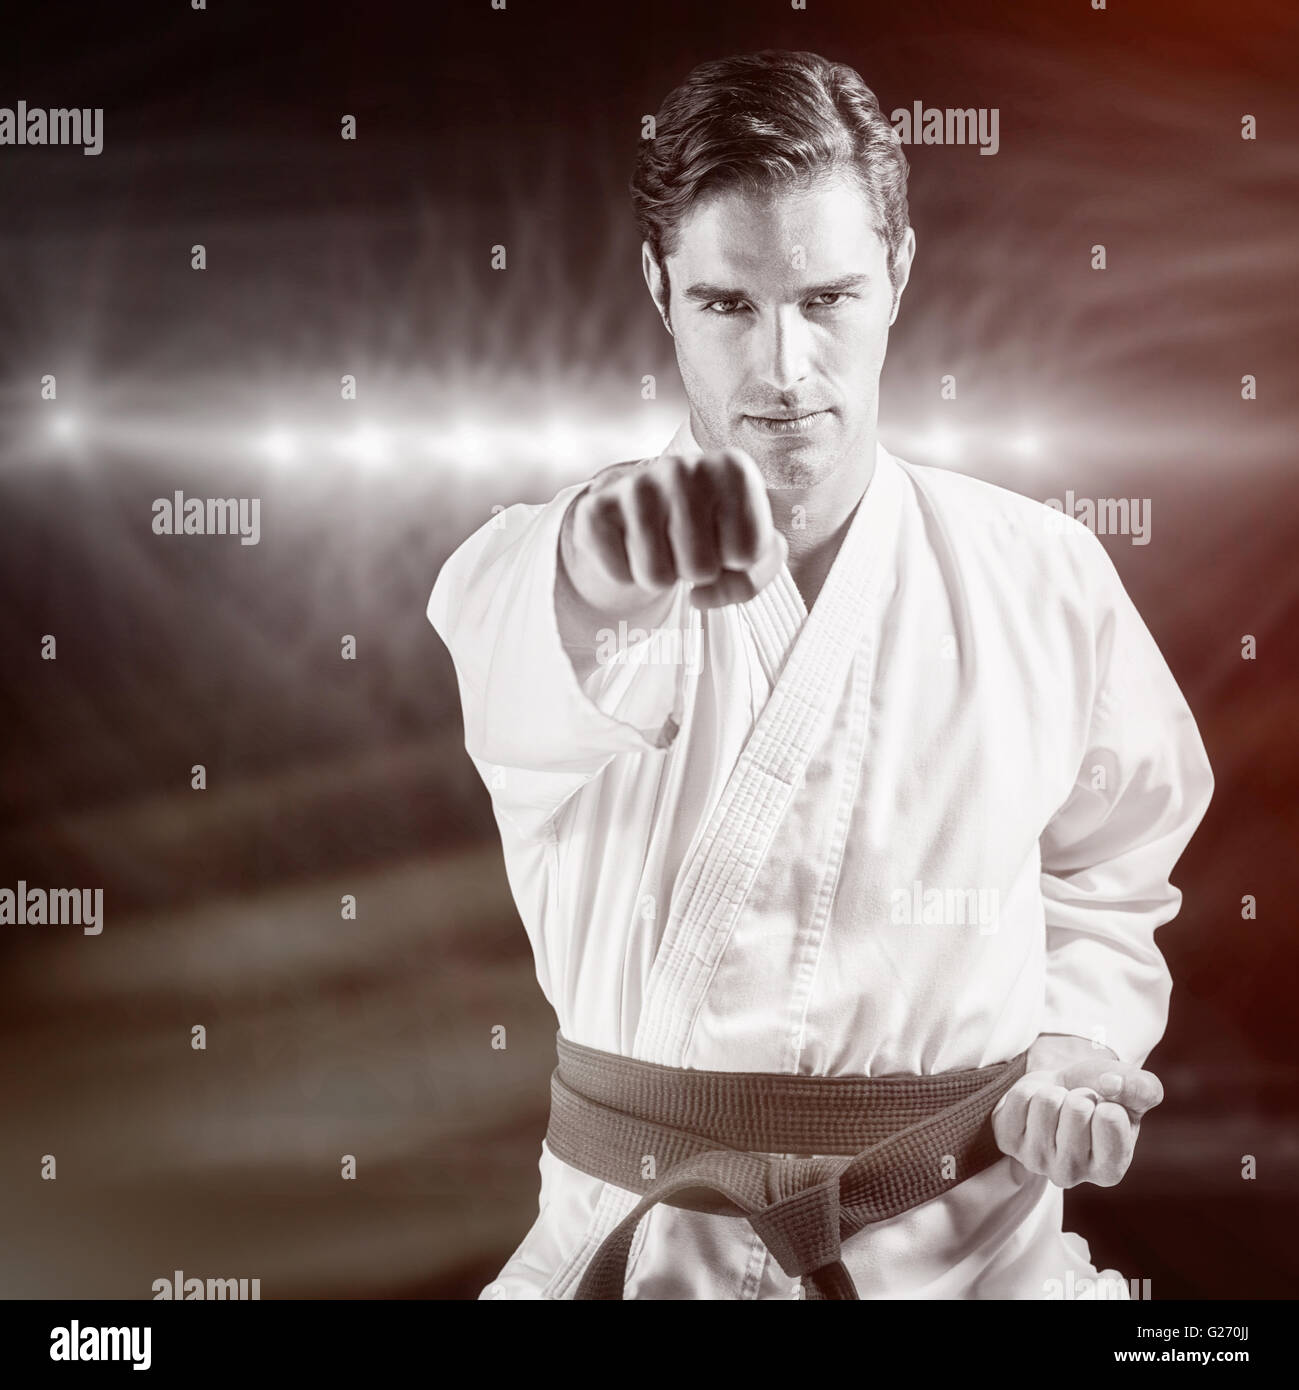 Imagen compuesta de retrato de luchador de realizar karate postura Foto de stock